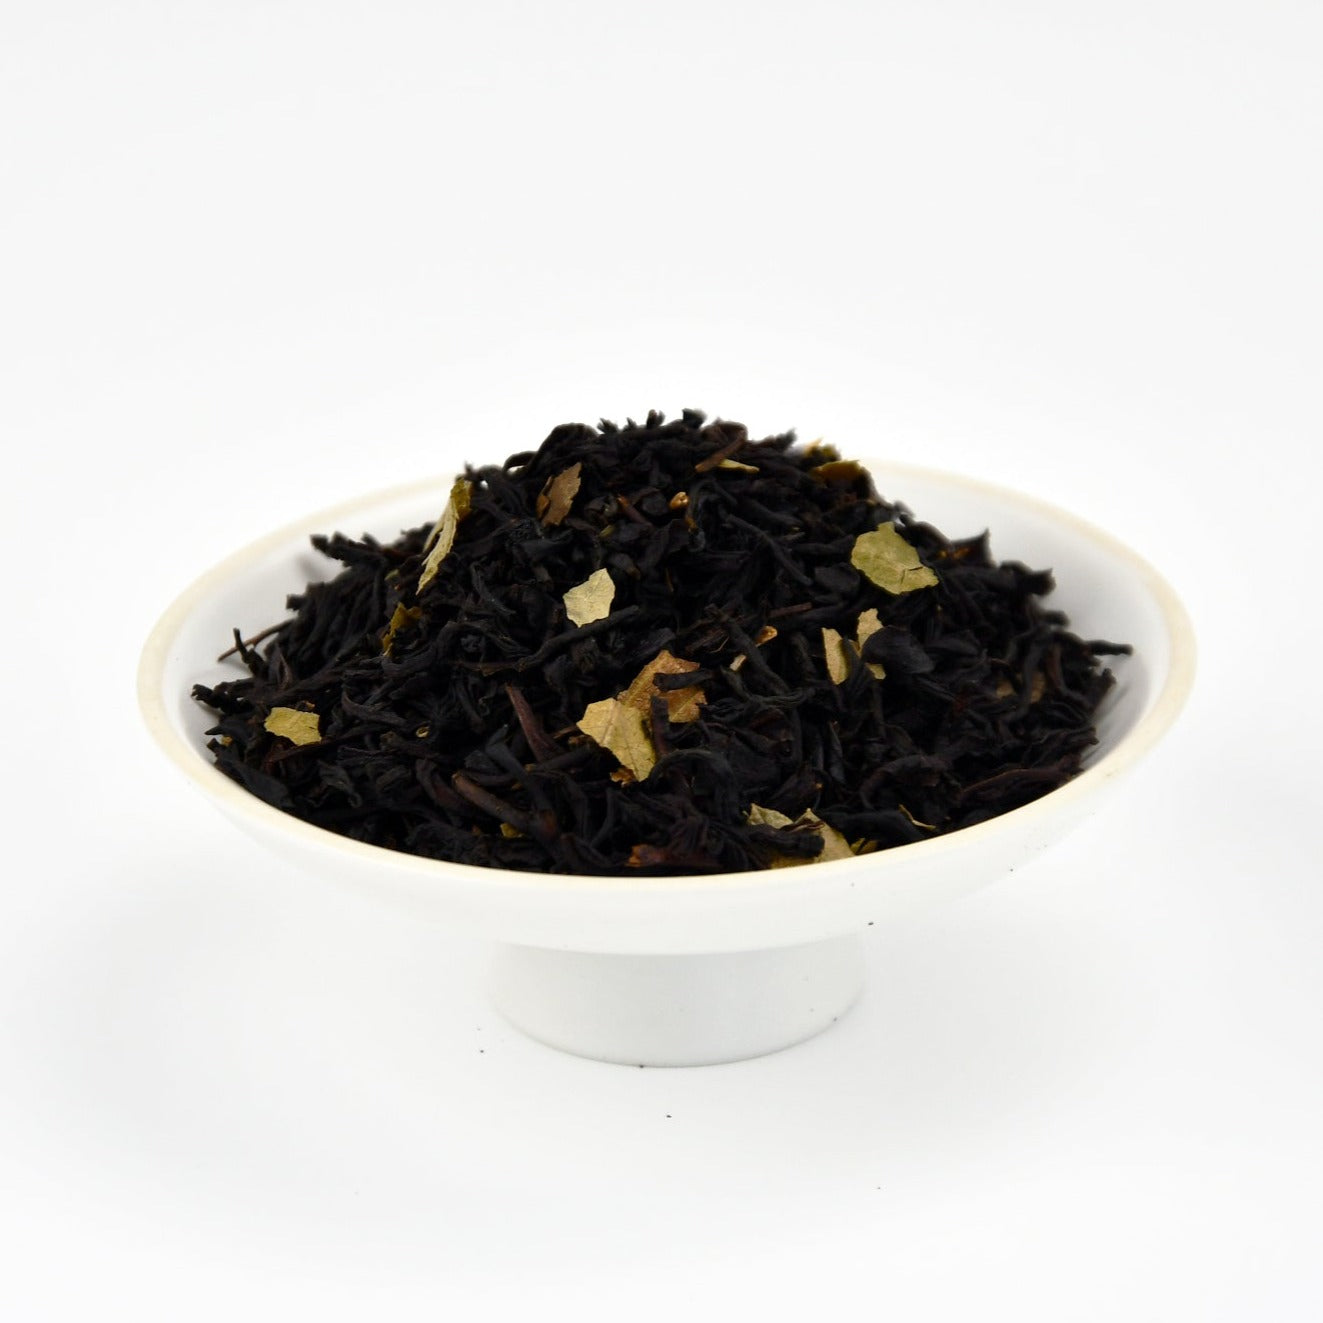 Currant Black Tea